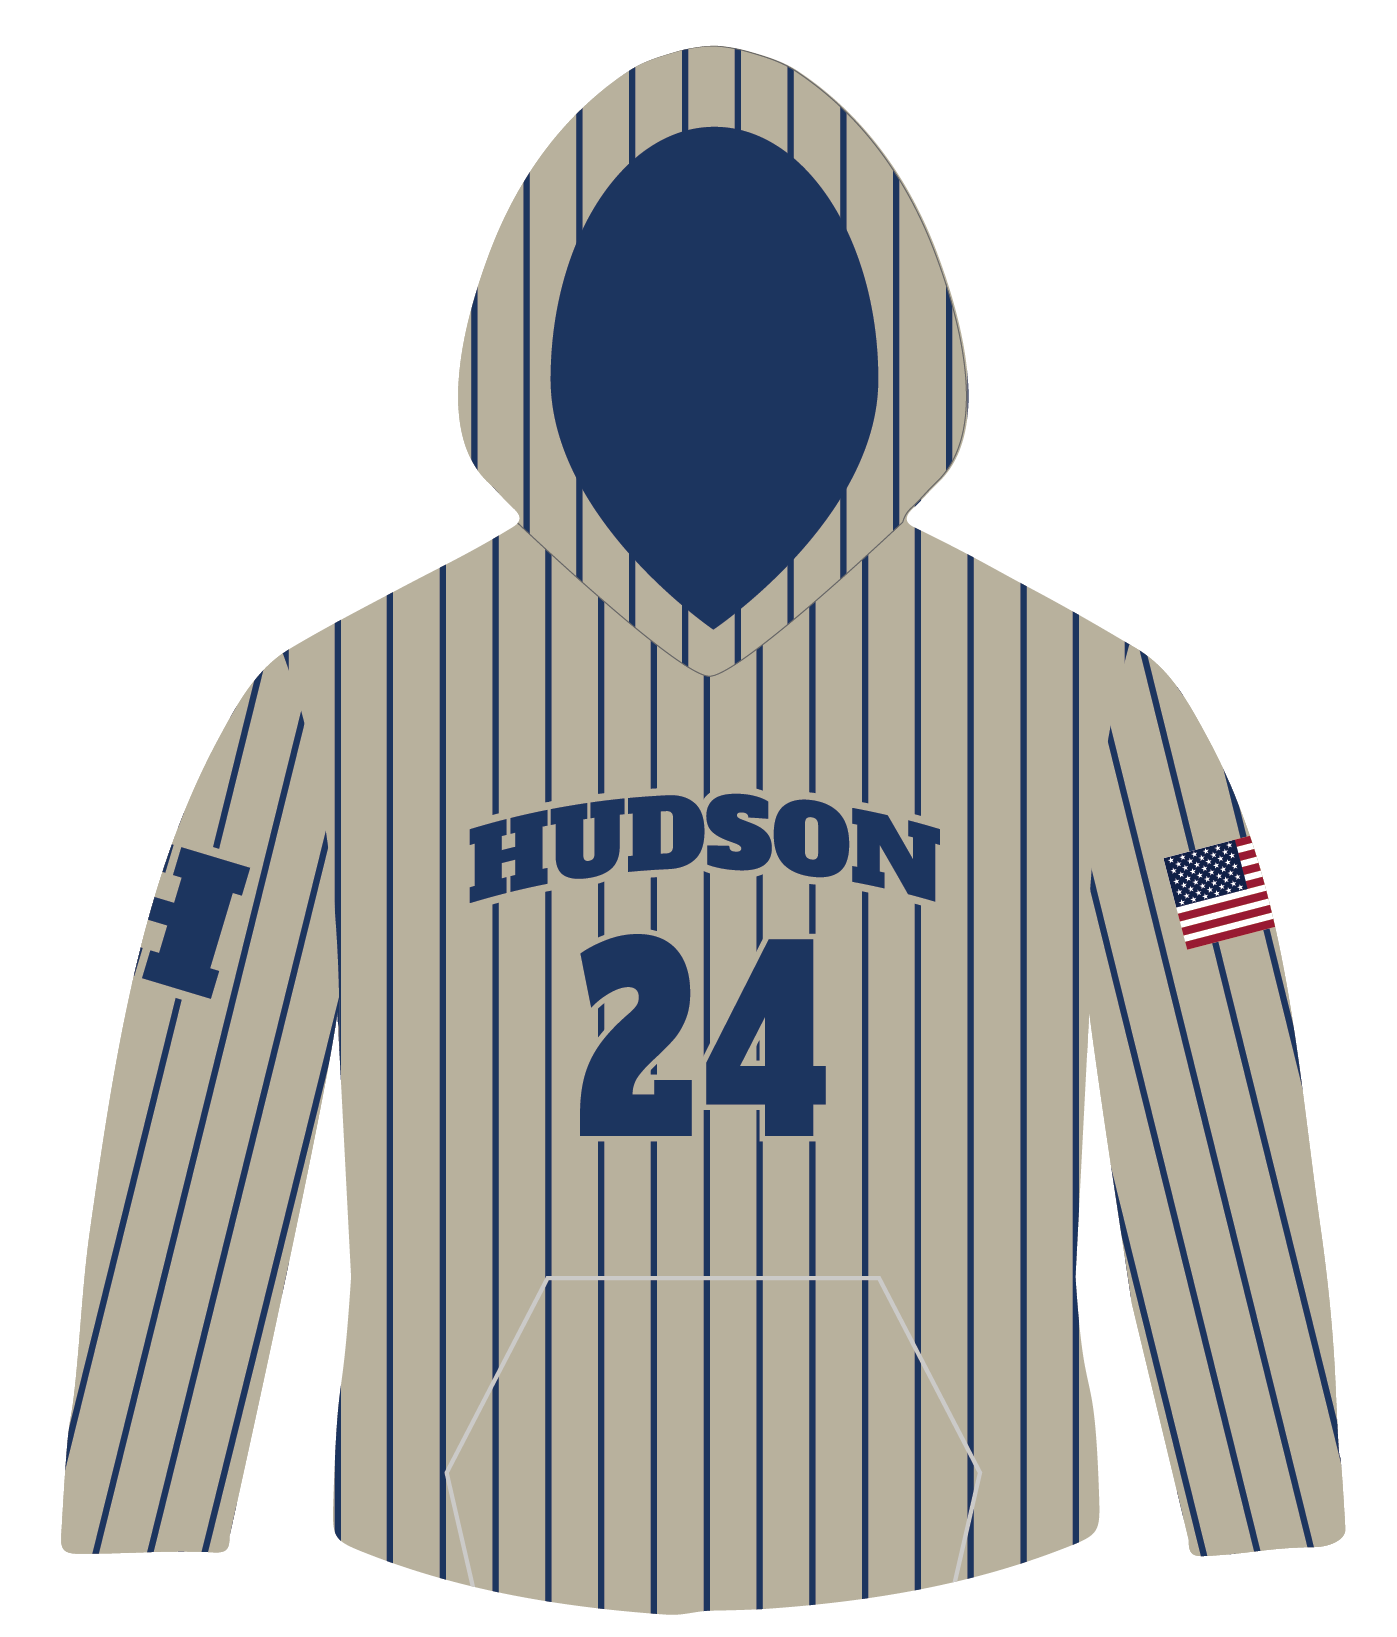 Hudson Baseball